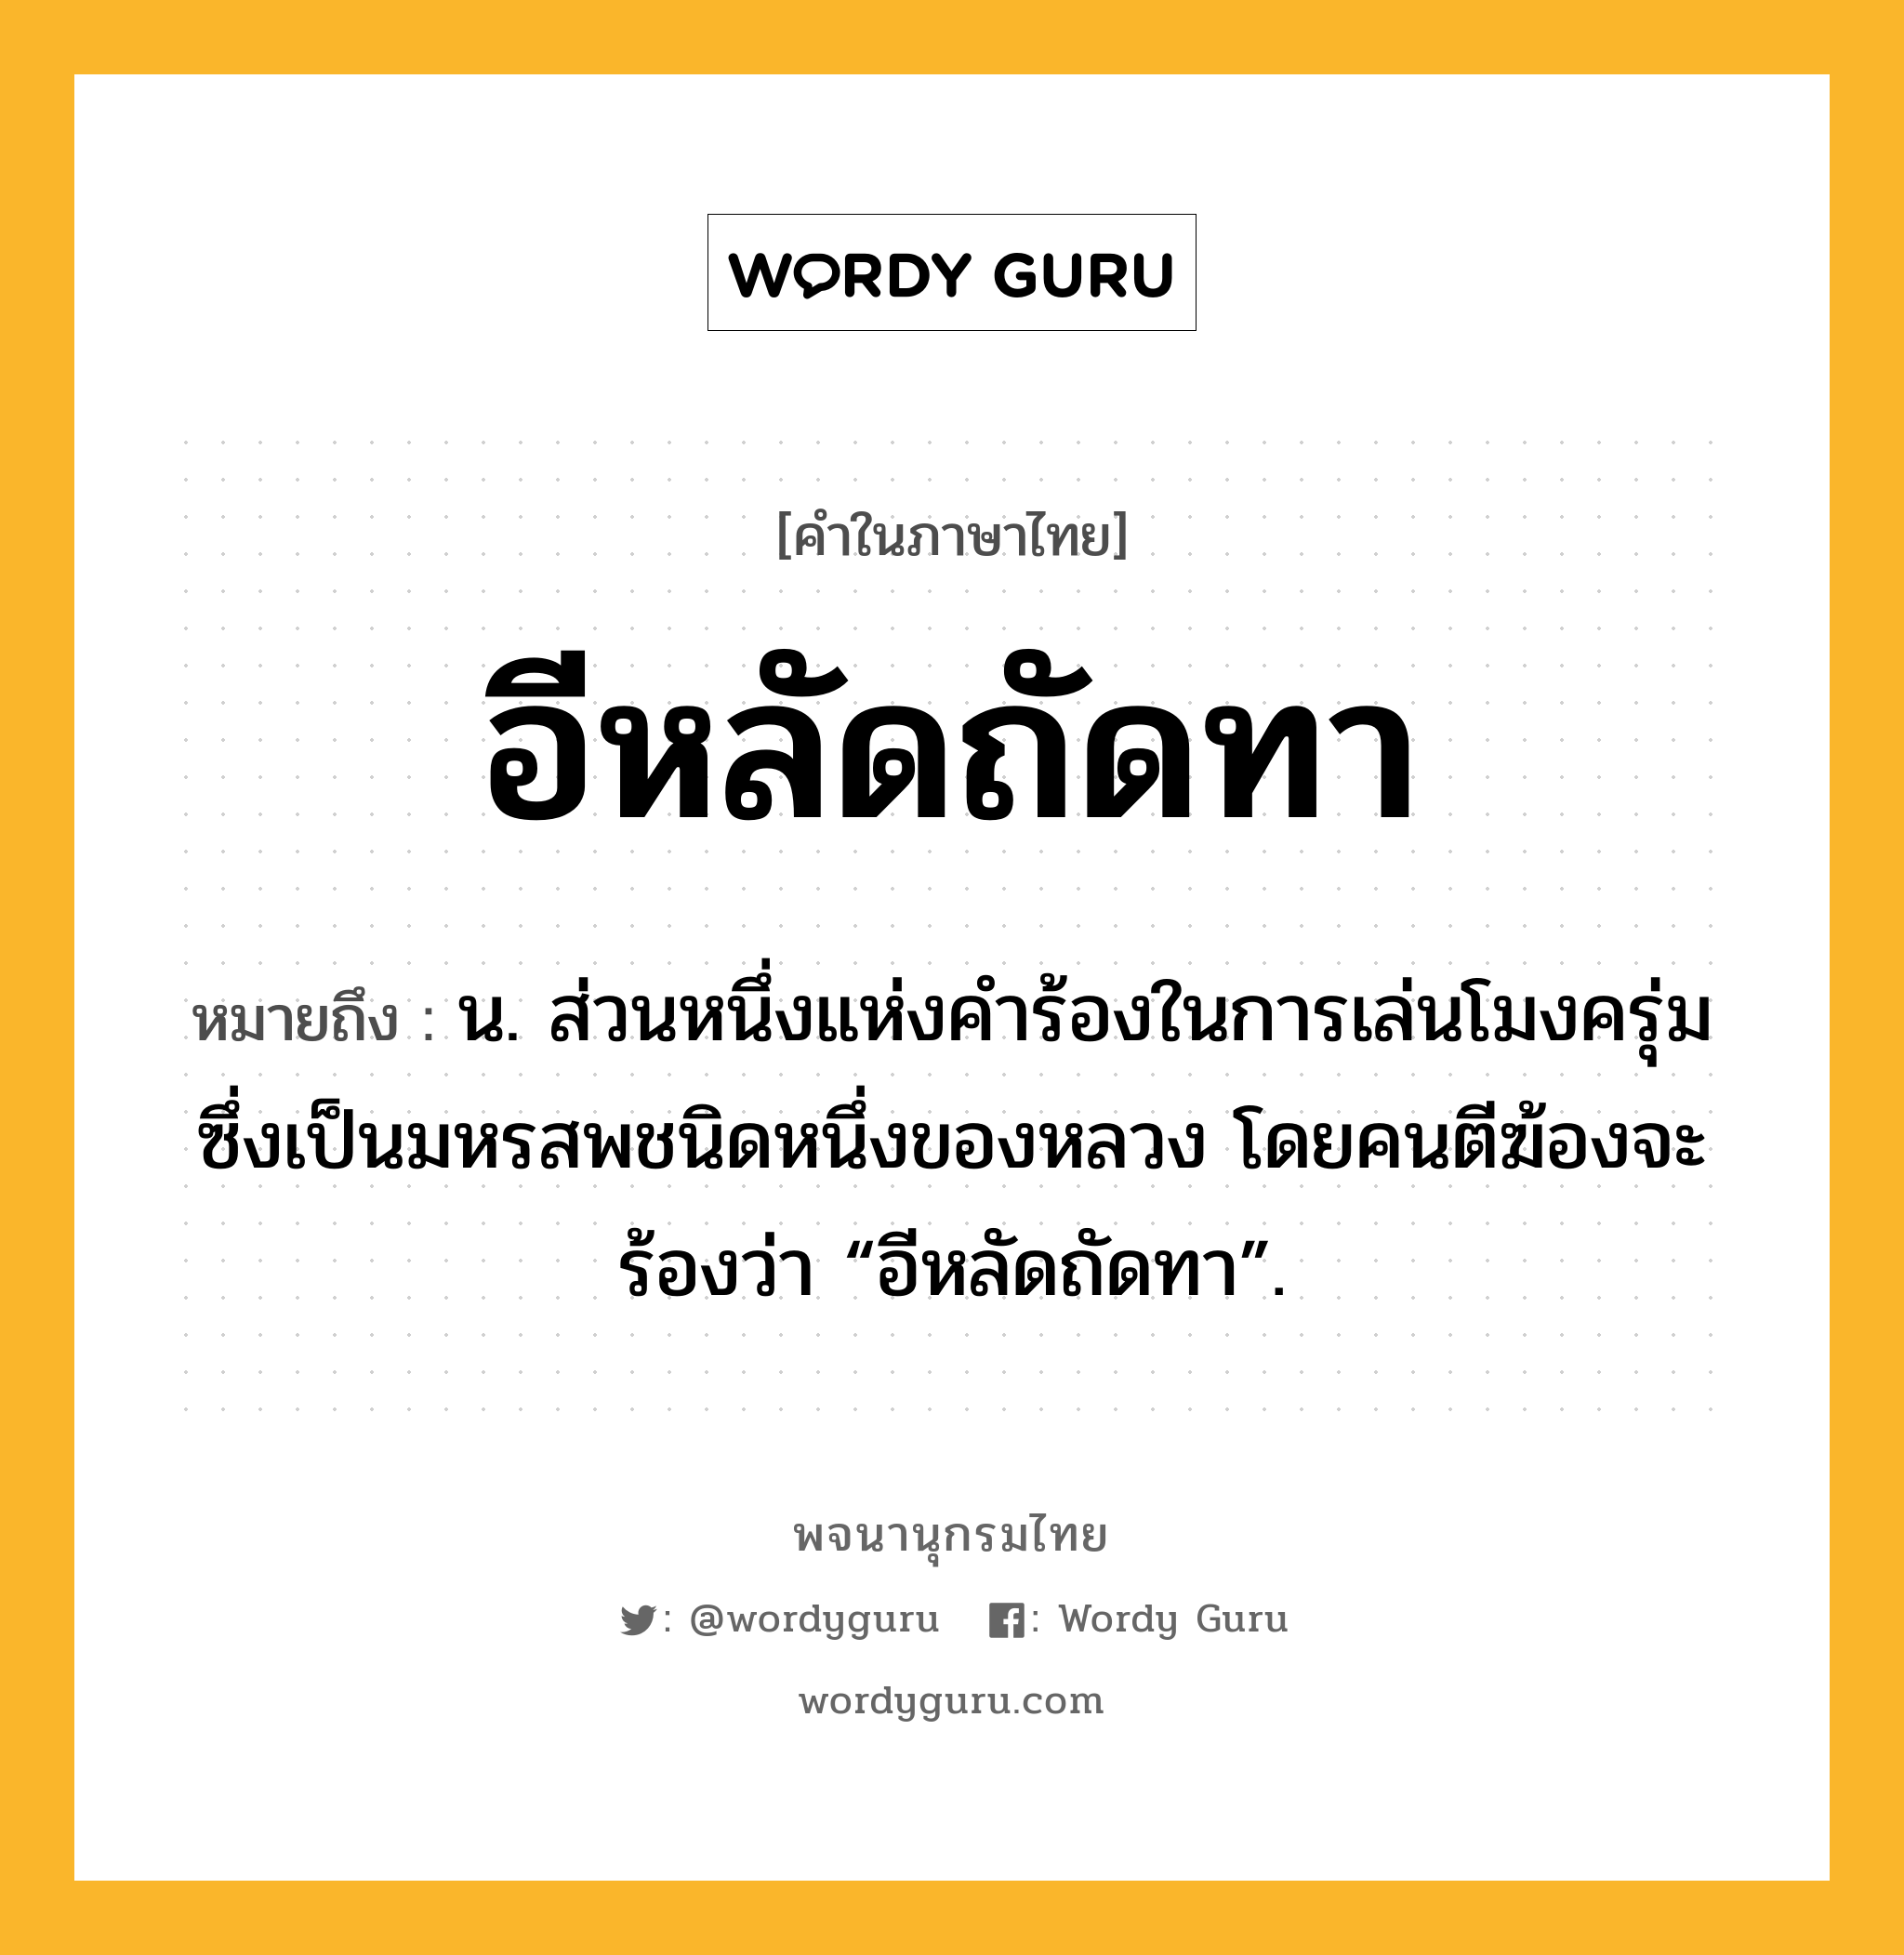 อีหลัดถัดทา ความหมาย หมายถึงอะไร?, คำในภาษาไทย อีหลัดถัดทา หมายถึง น. ส่วนหนึ่งแห่งคําร้องในการเล่นโมงครุ่มซึ่งเป็นมหรสพชนิดหนึ่งของหลวง โดยคนตีฆ้องจะร้องว่า “อีหลัดถัดทา”.